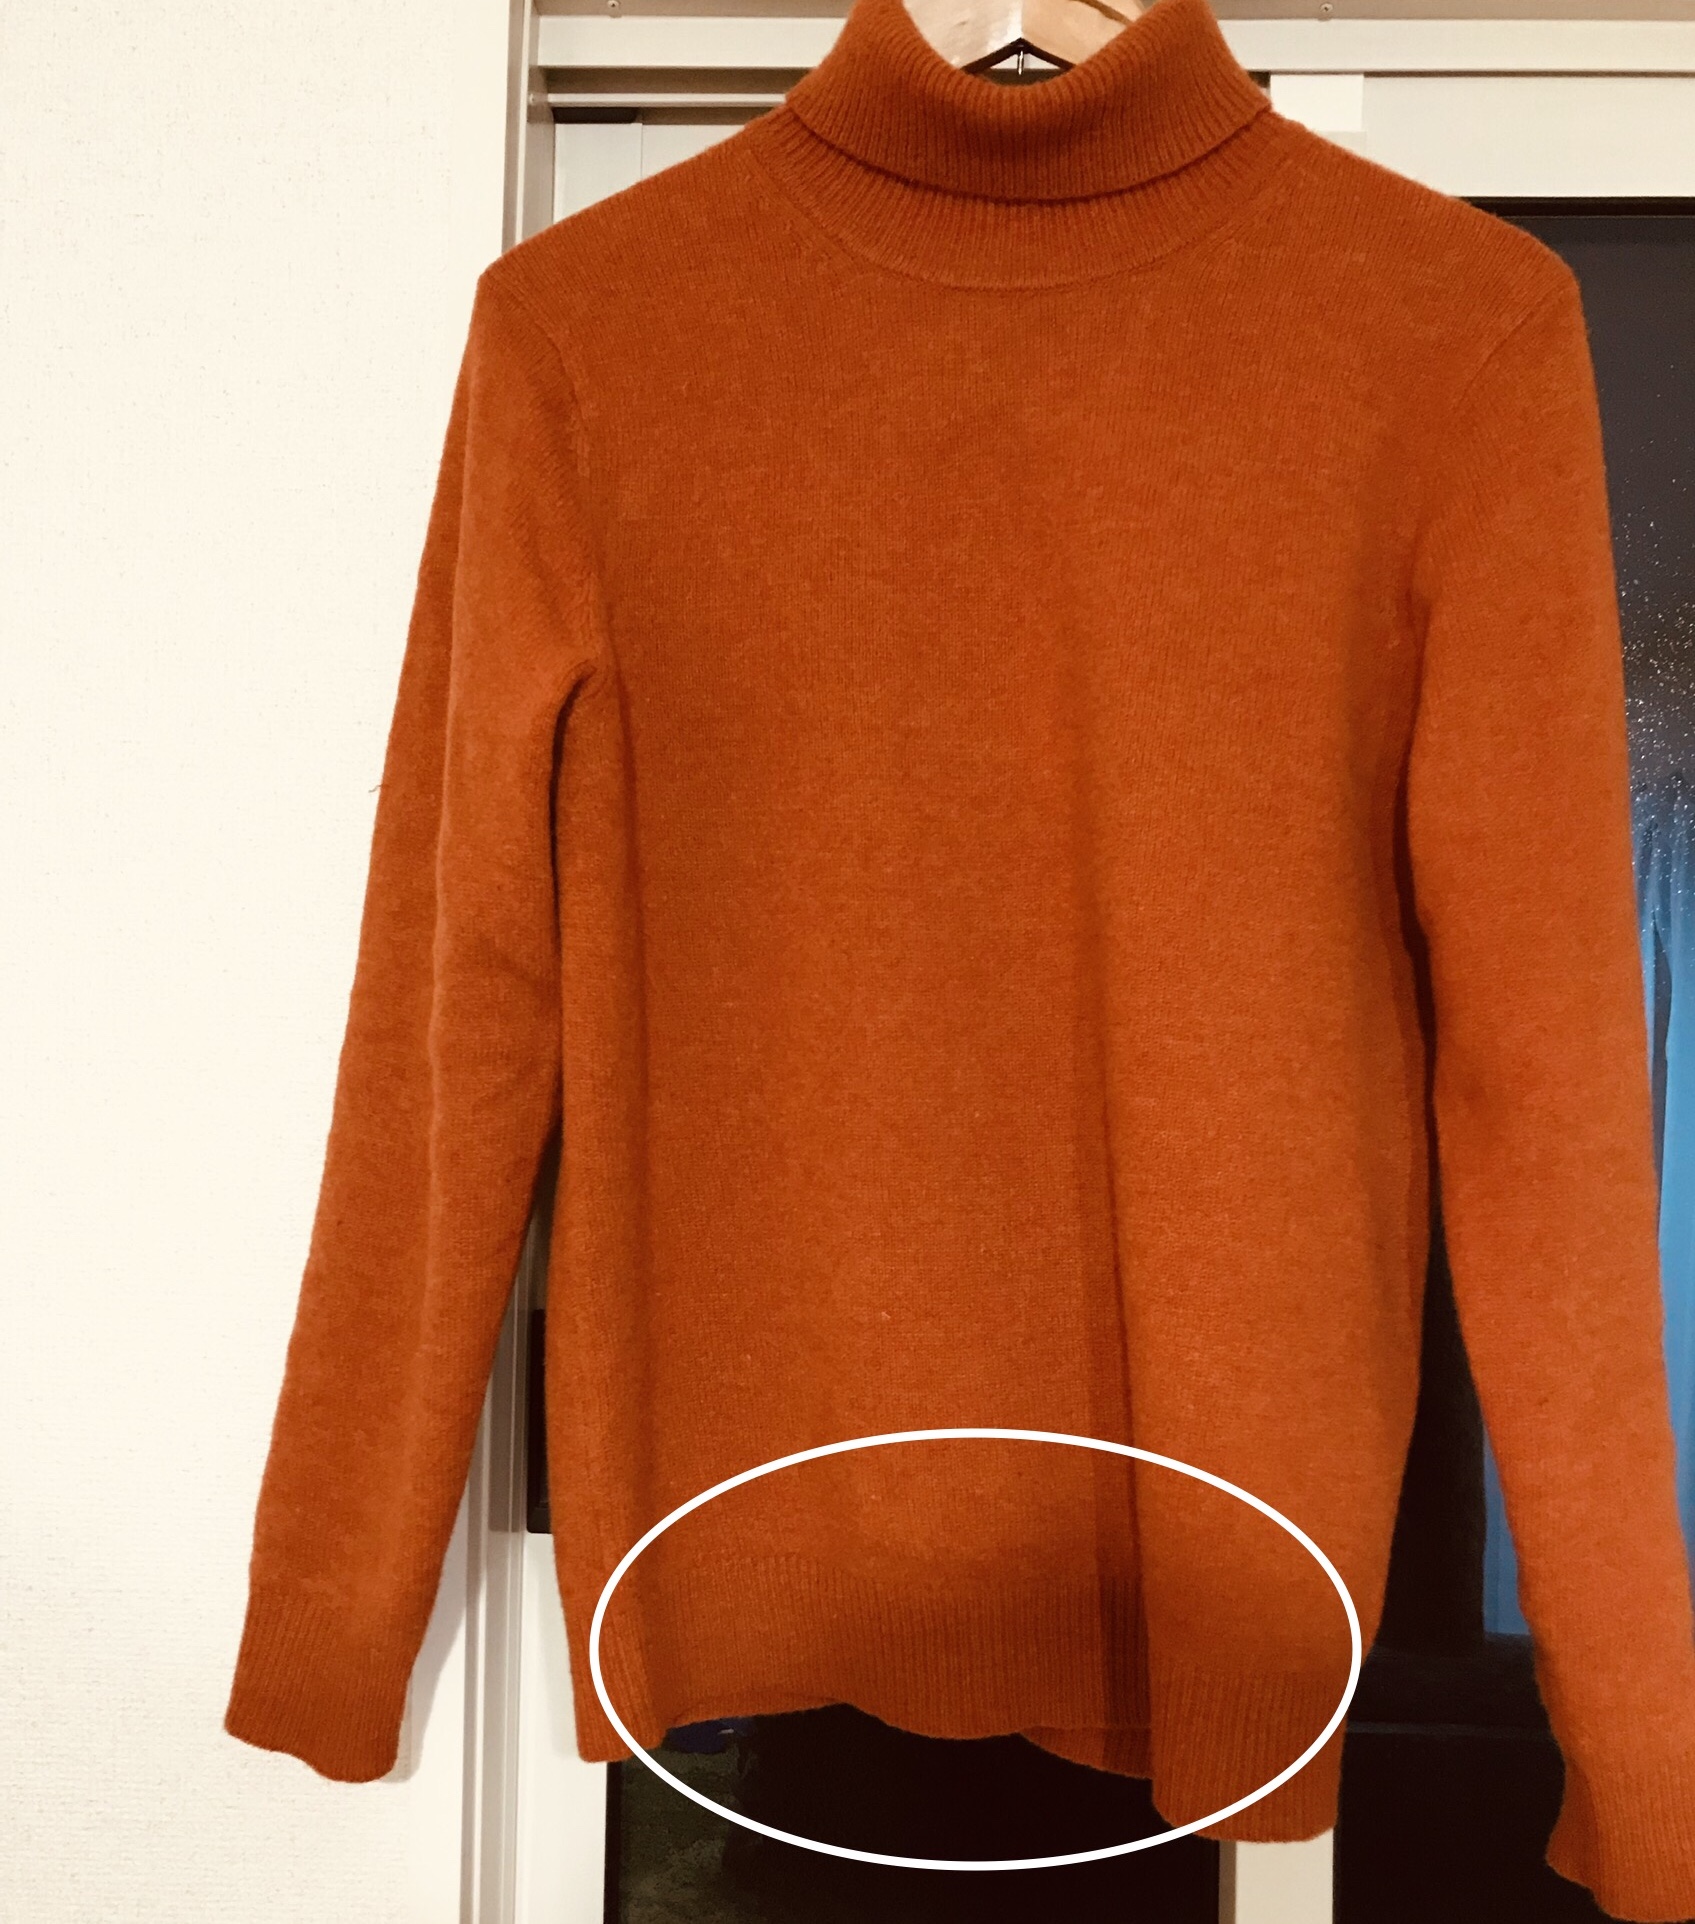 ユニクロのメンズタートルネックセーターは明るい色でも品良く着こなせておすすめ Small 背が低いからこそオシャレになれるブログ